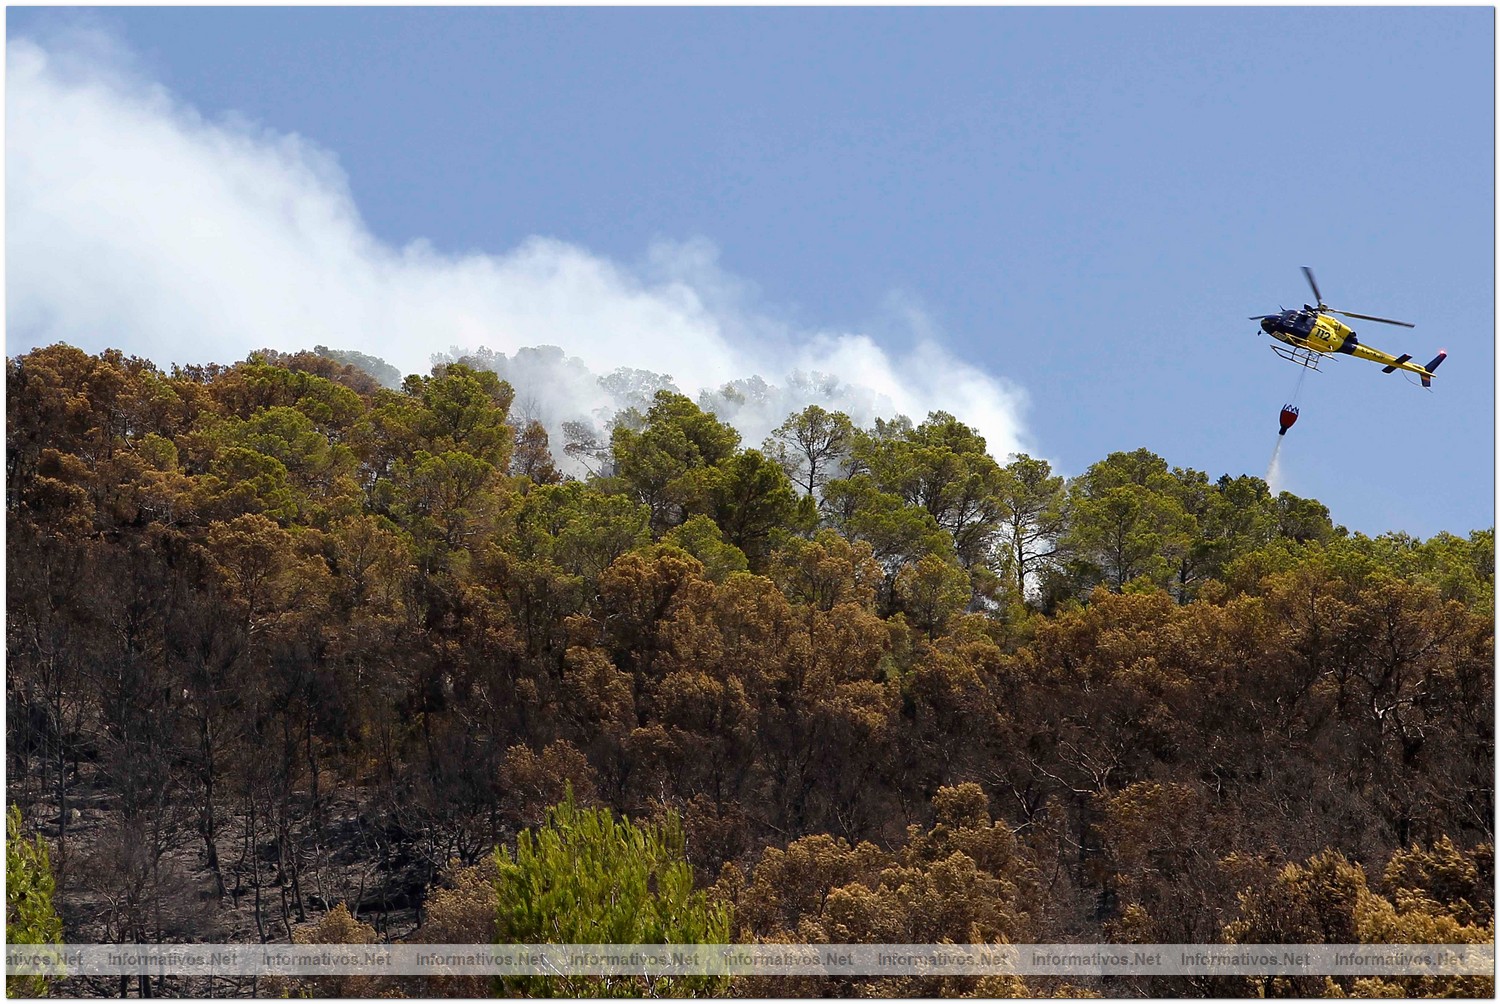 23 Agosto 2010.- Foto del incendio en Cala Benirras, Ibiza, donde han ardido 150 hectáreas.